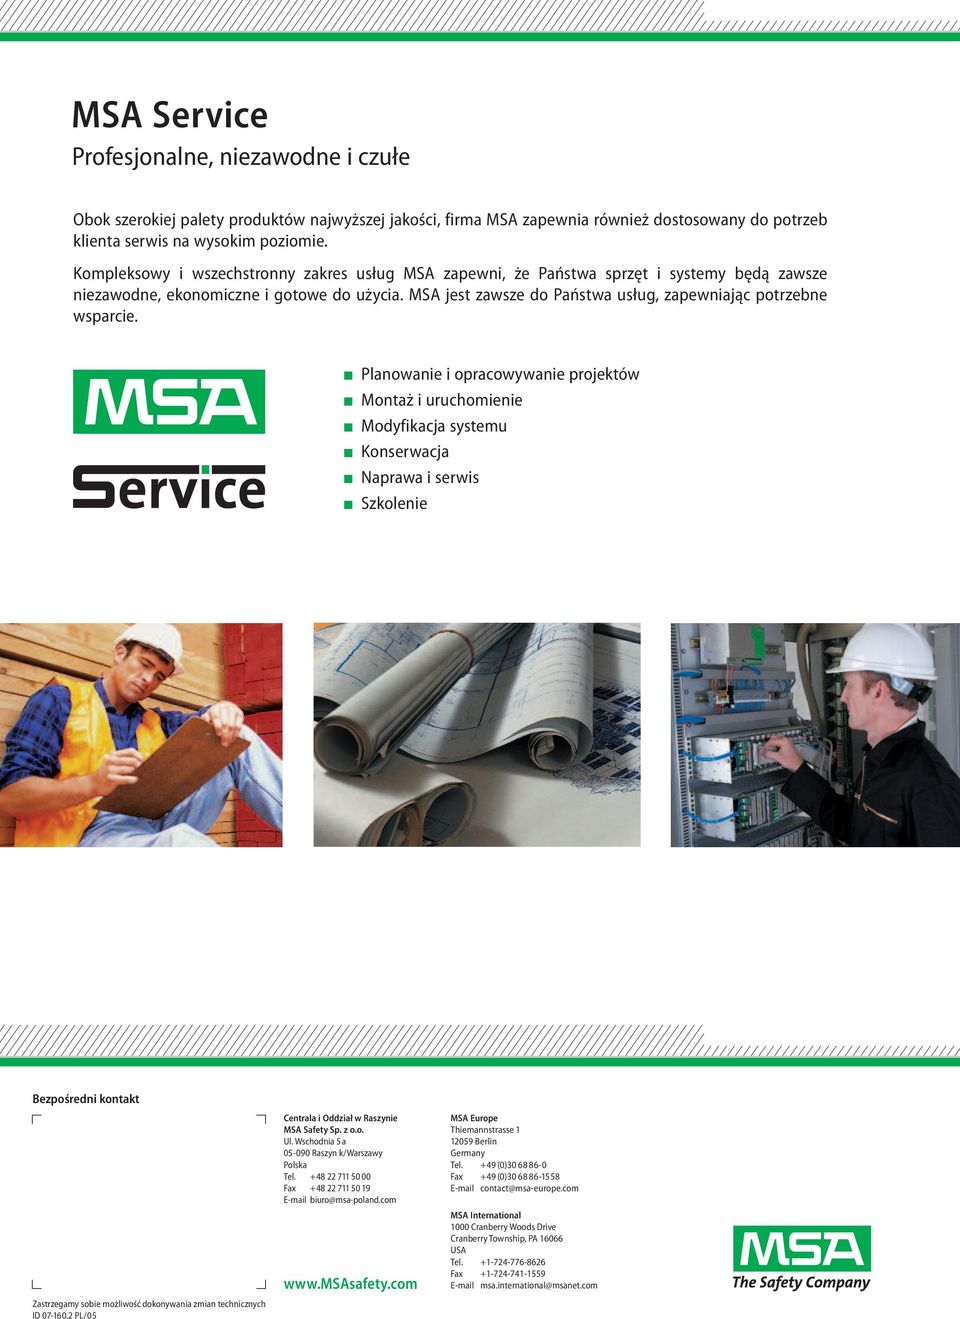 MSA jest zawsze do Państwa usług, zapewniając potrzebne wsparcie.